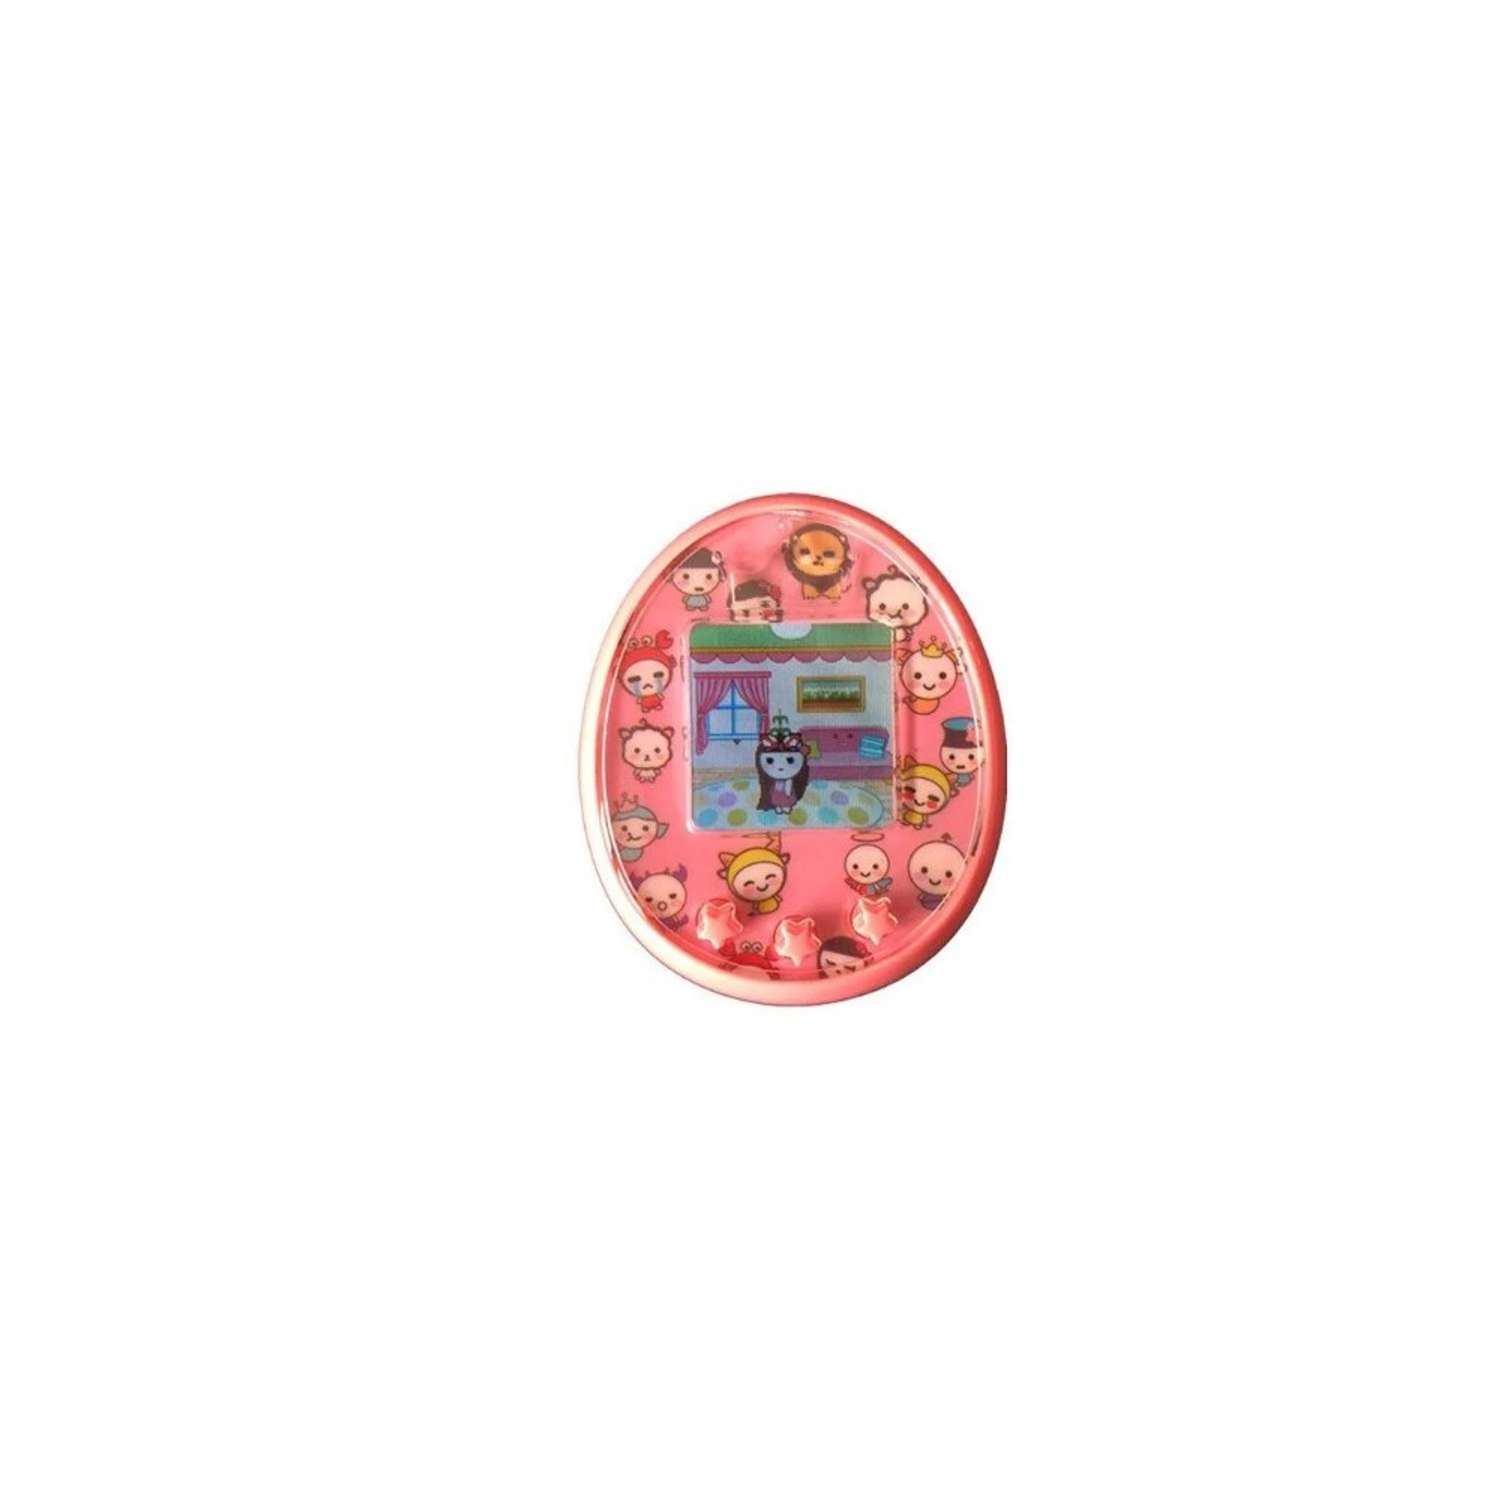 Тамагочи Бестселлер Электронный Питомец с цветным дисплеем 2118 розовый - фото 1